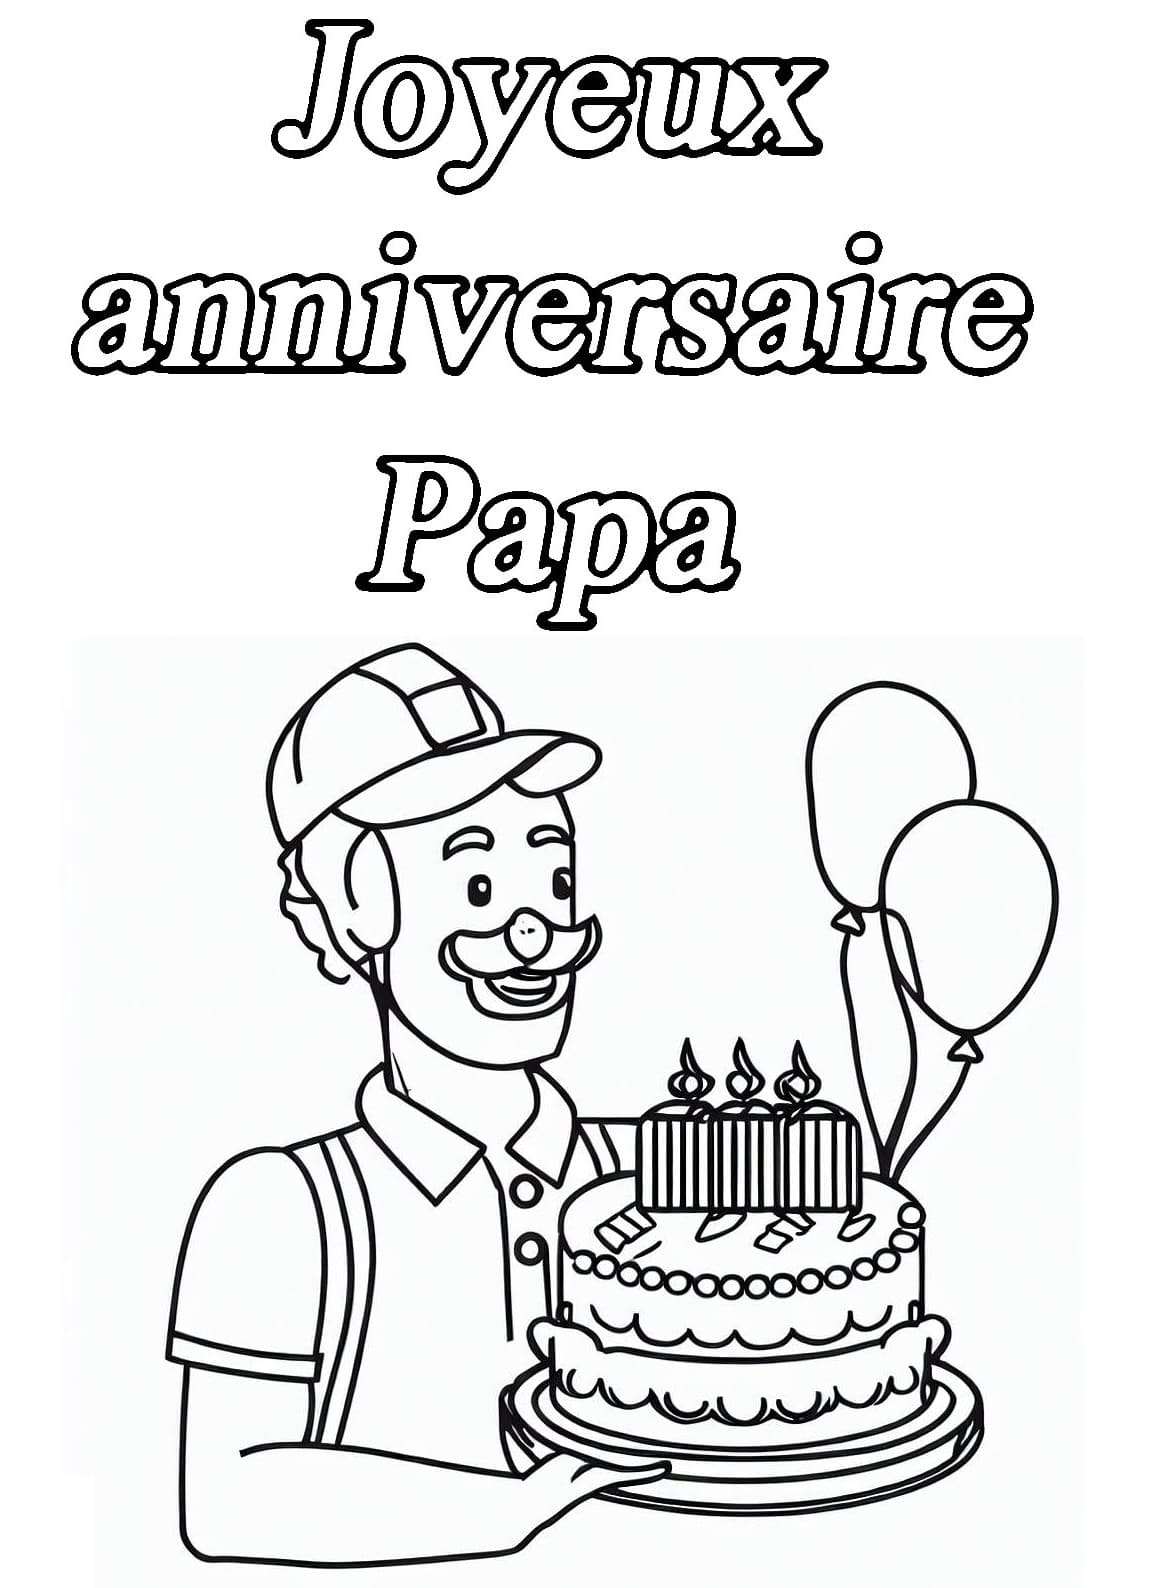 Dessin Gratuit de Joyeux Anniversaire Papa coloring page